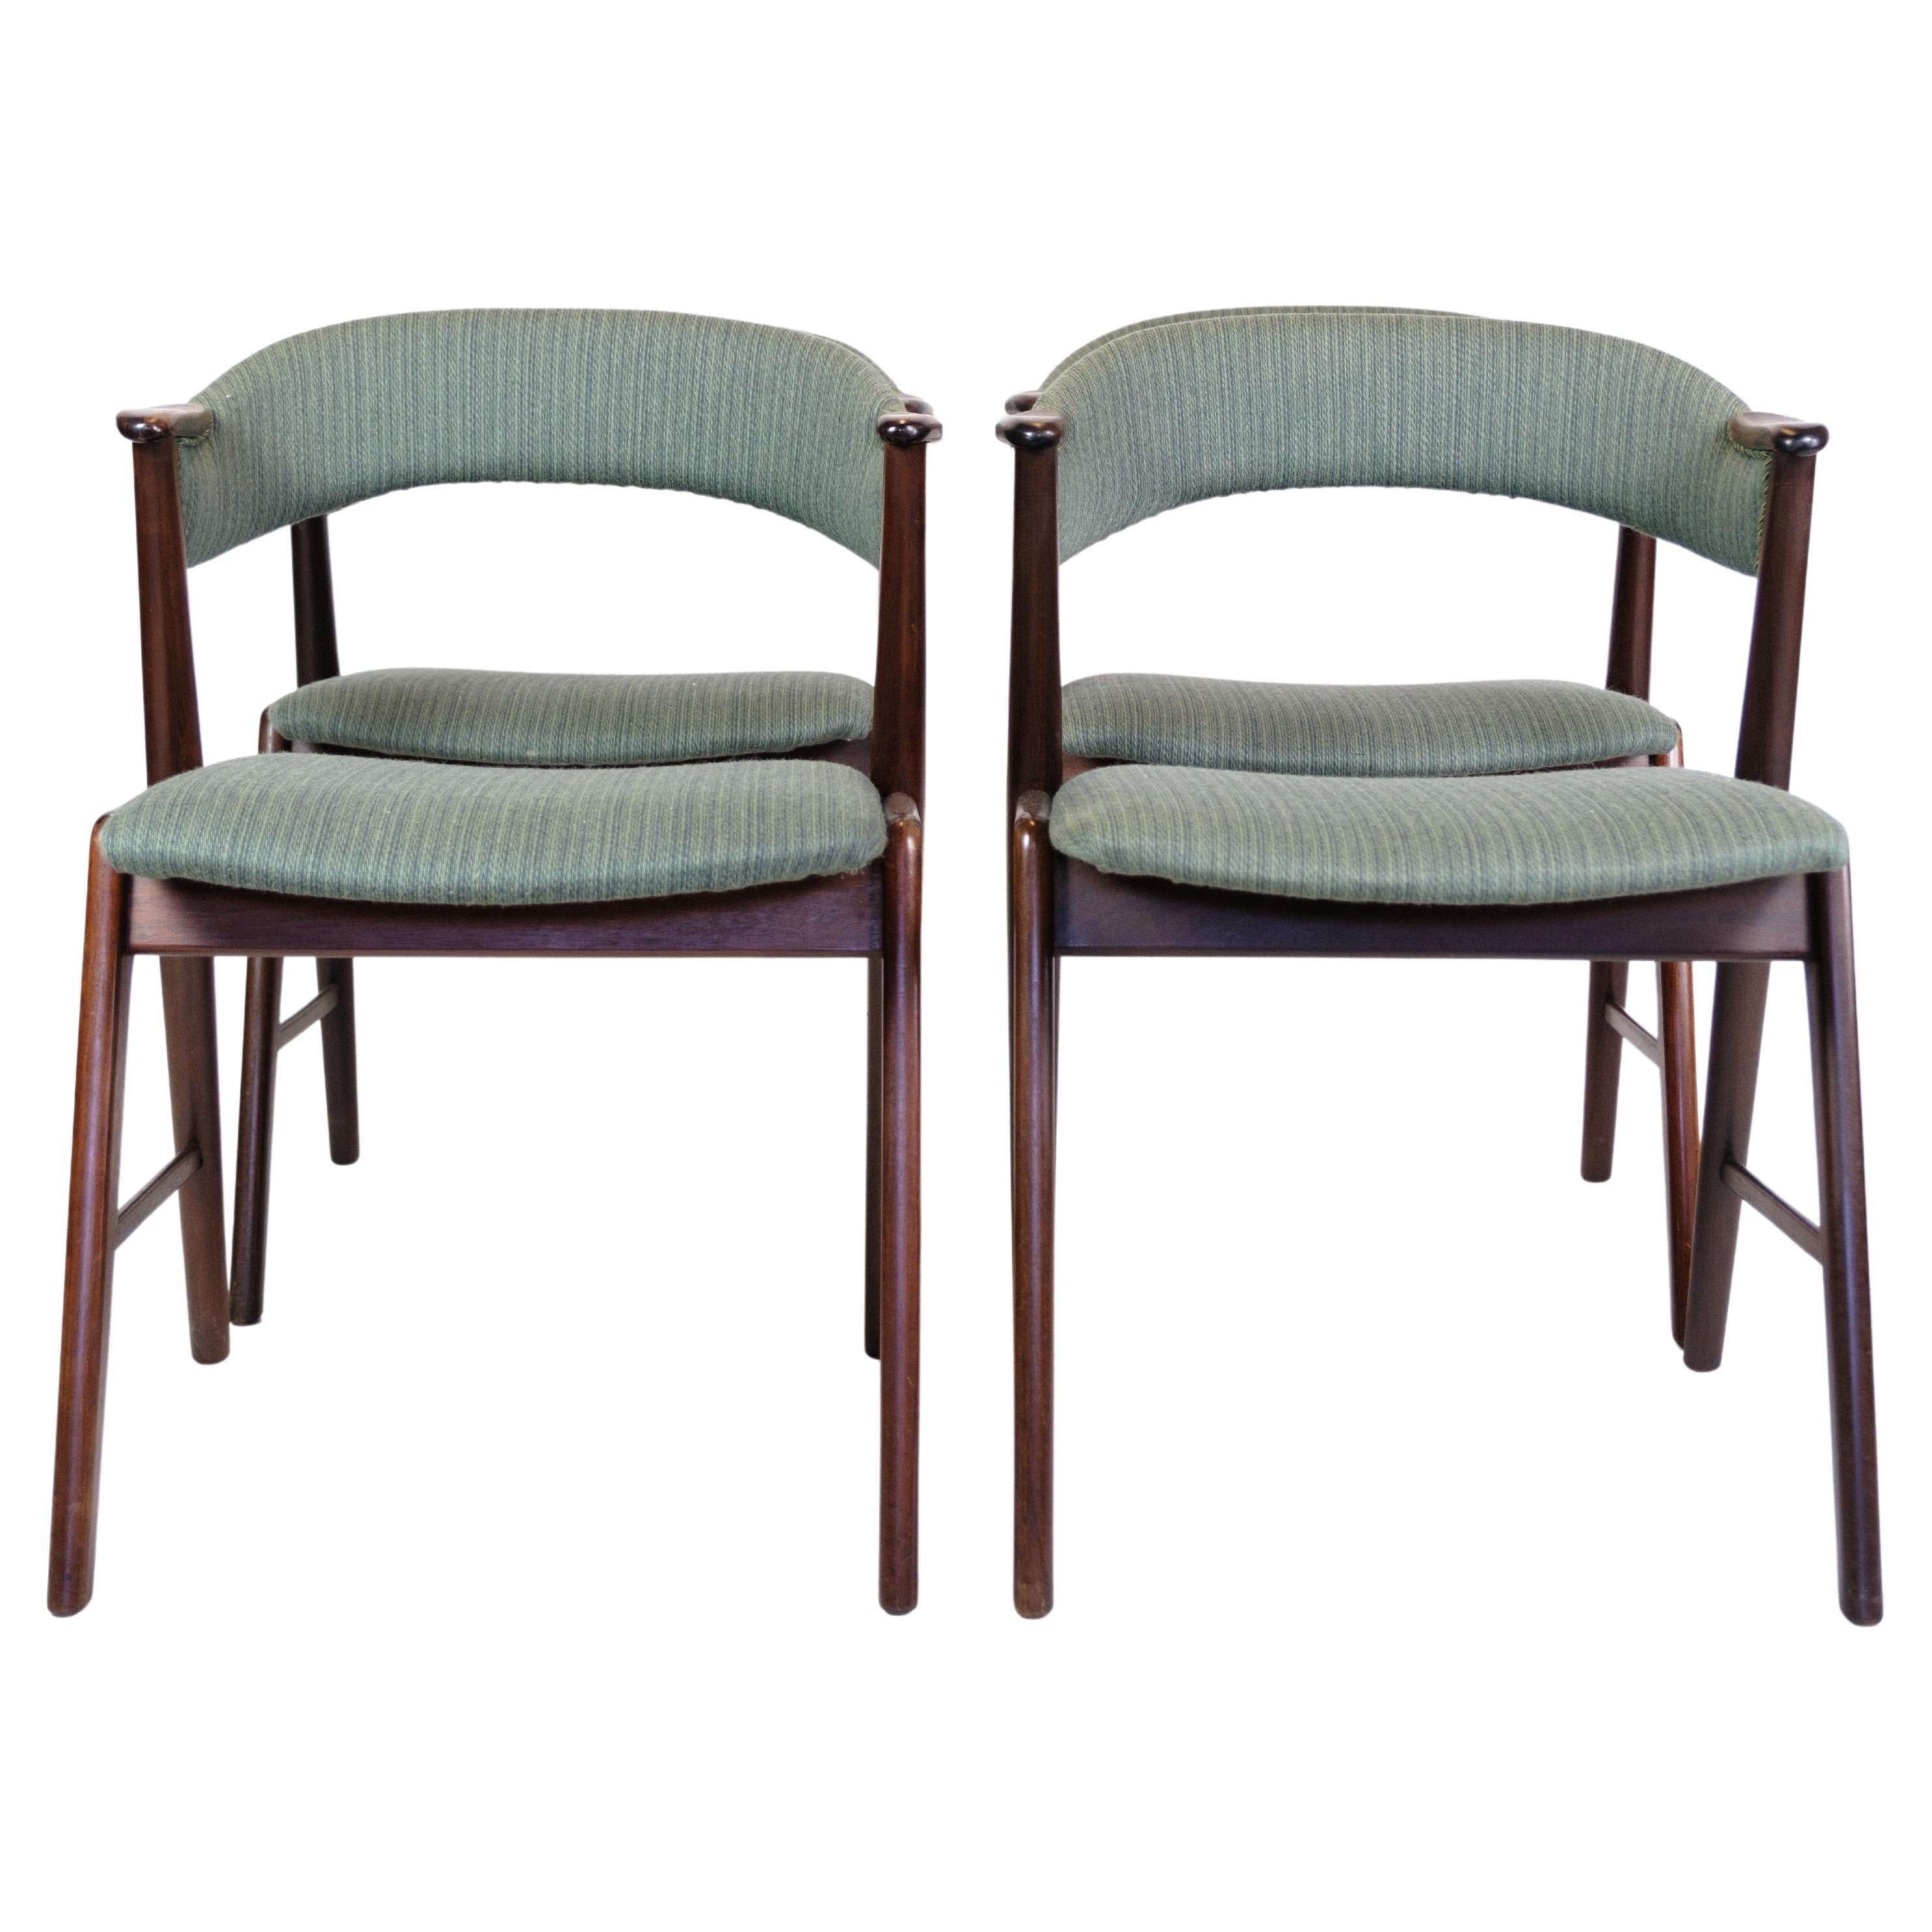 Satz von 4 Esszimmerstühlen aus Rosenholz im dänischen Design, Korup-Stuhlfabrik, 1960